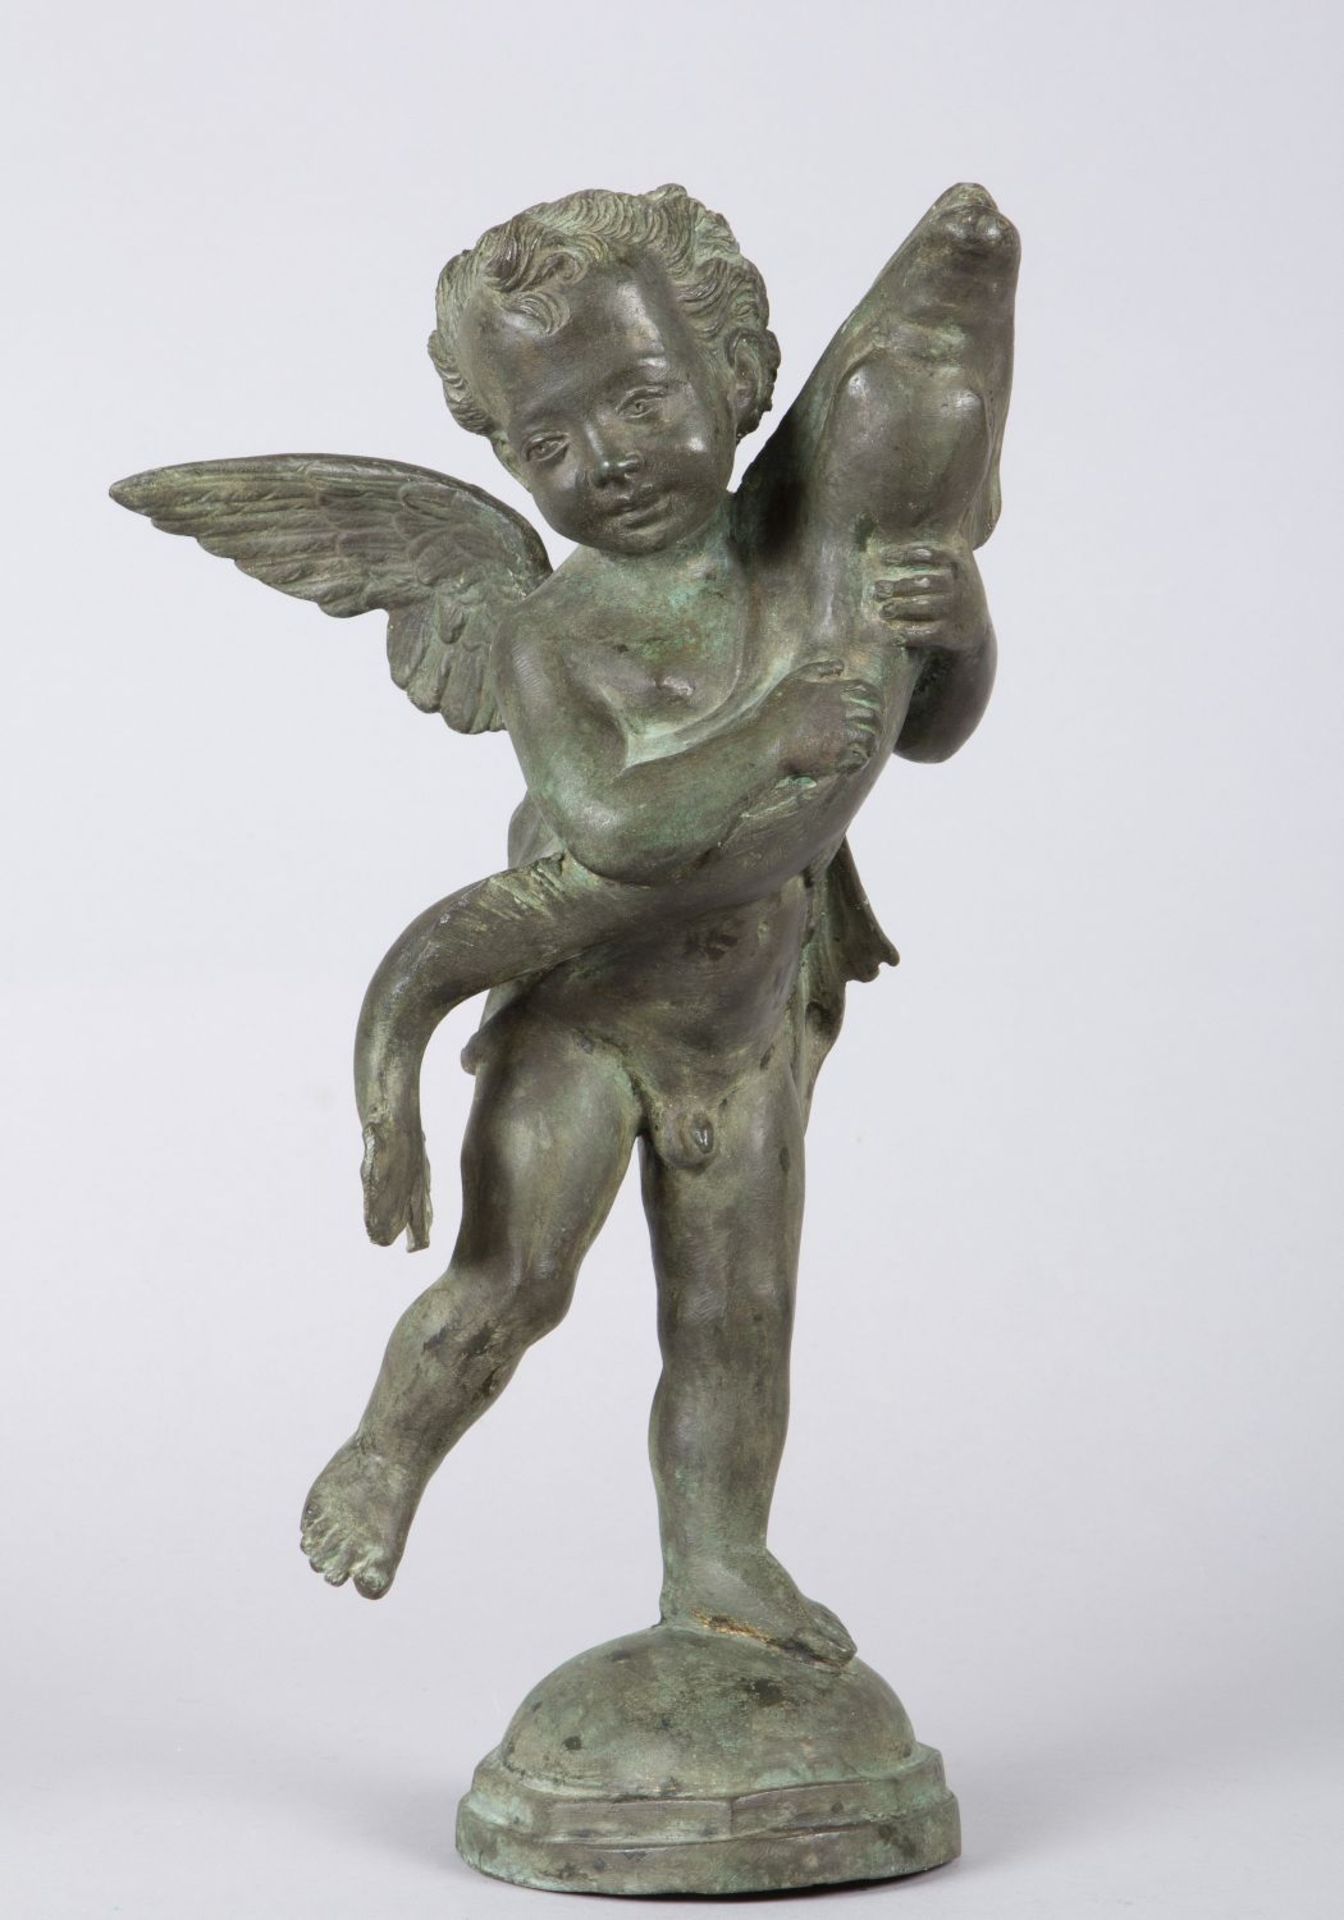 Engel mit Delphin als Wasserspeier Bronze. Um 1900. H. 39 cm.